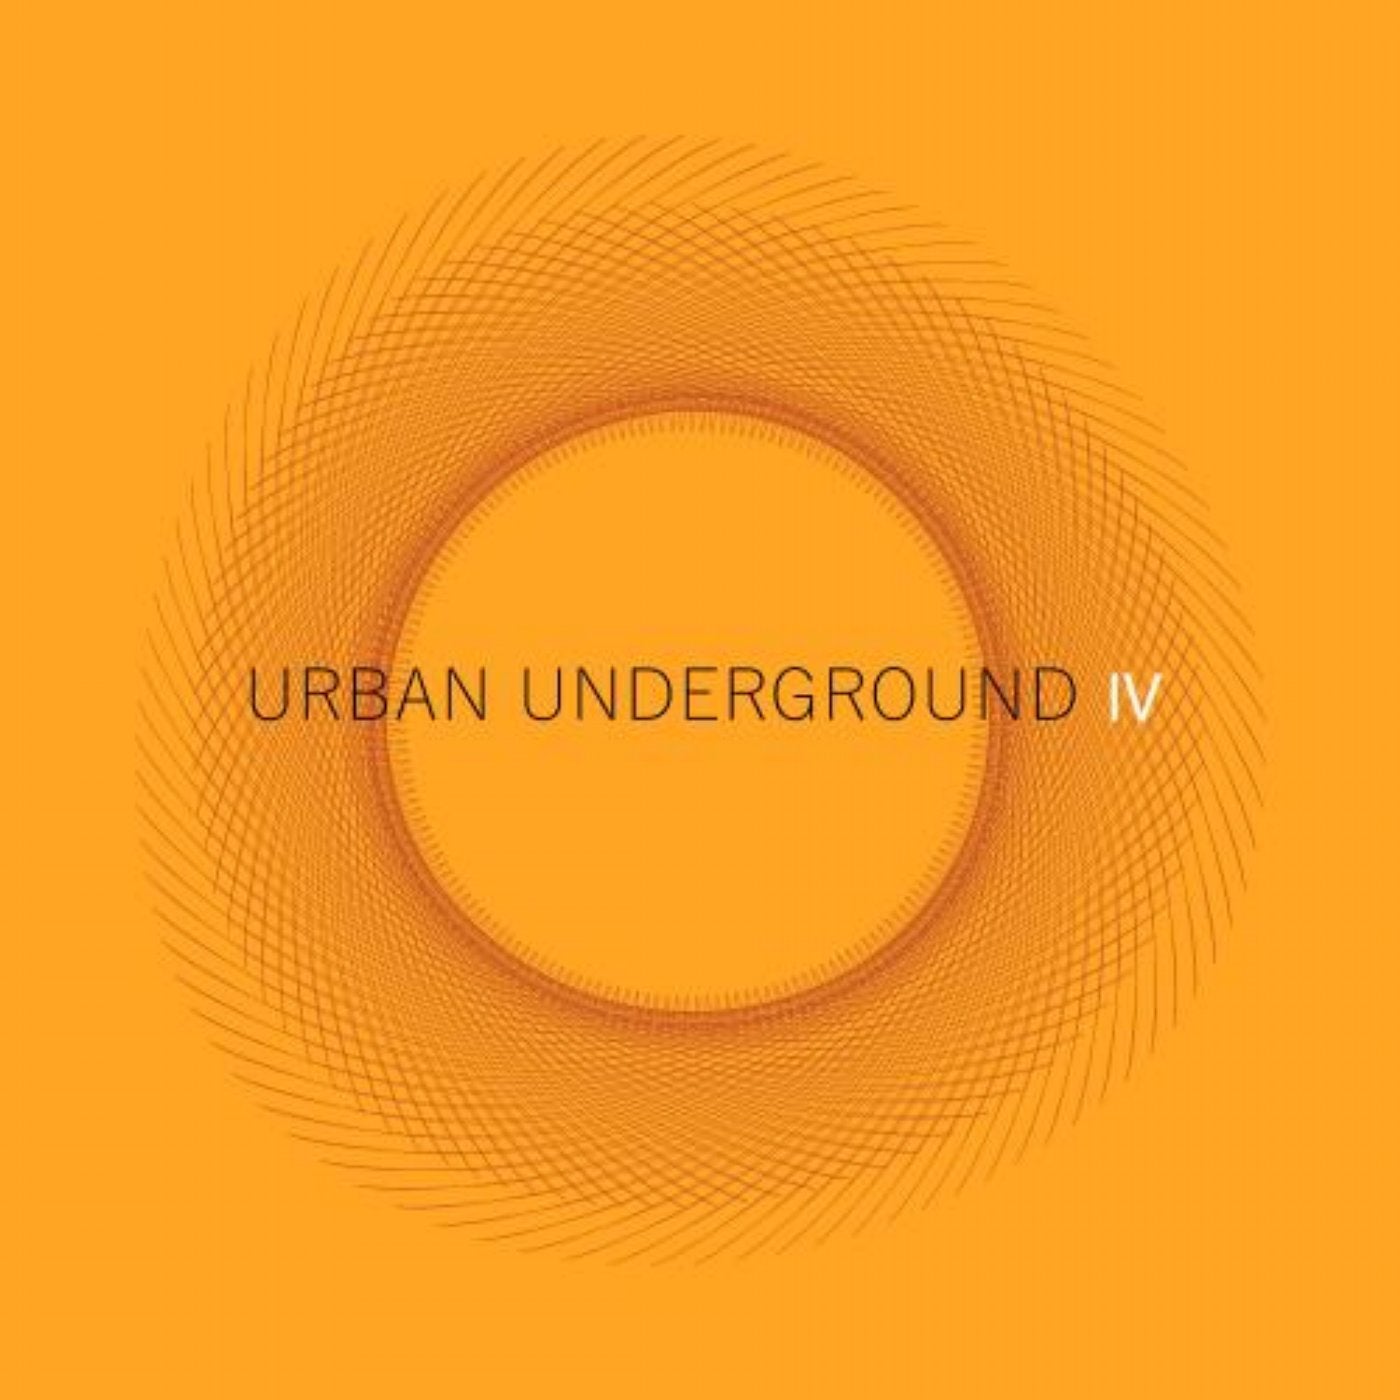 Urban Underground IV